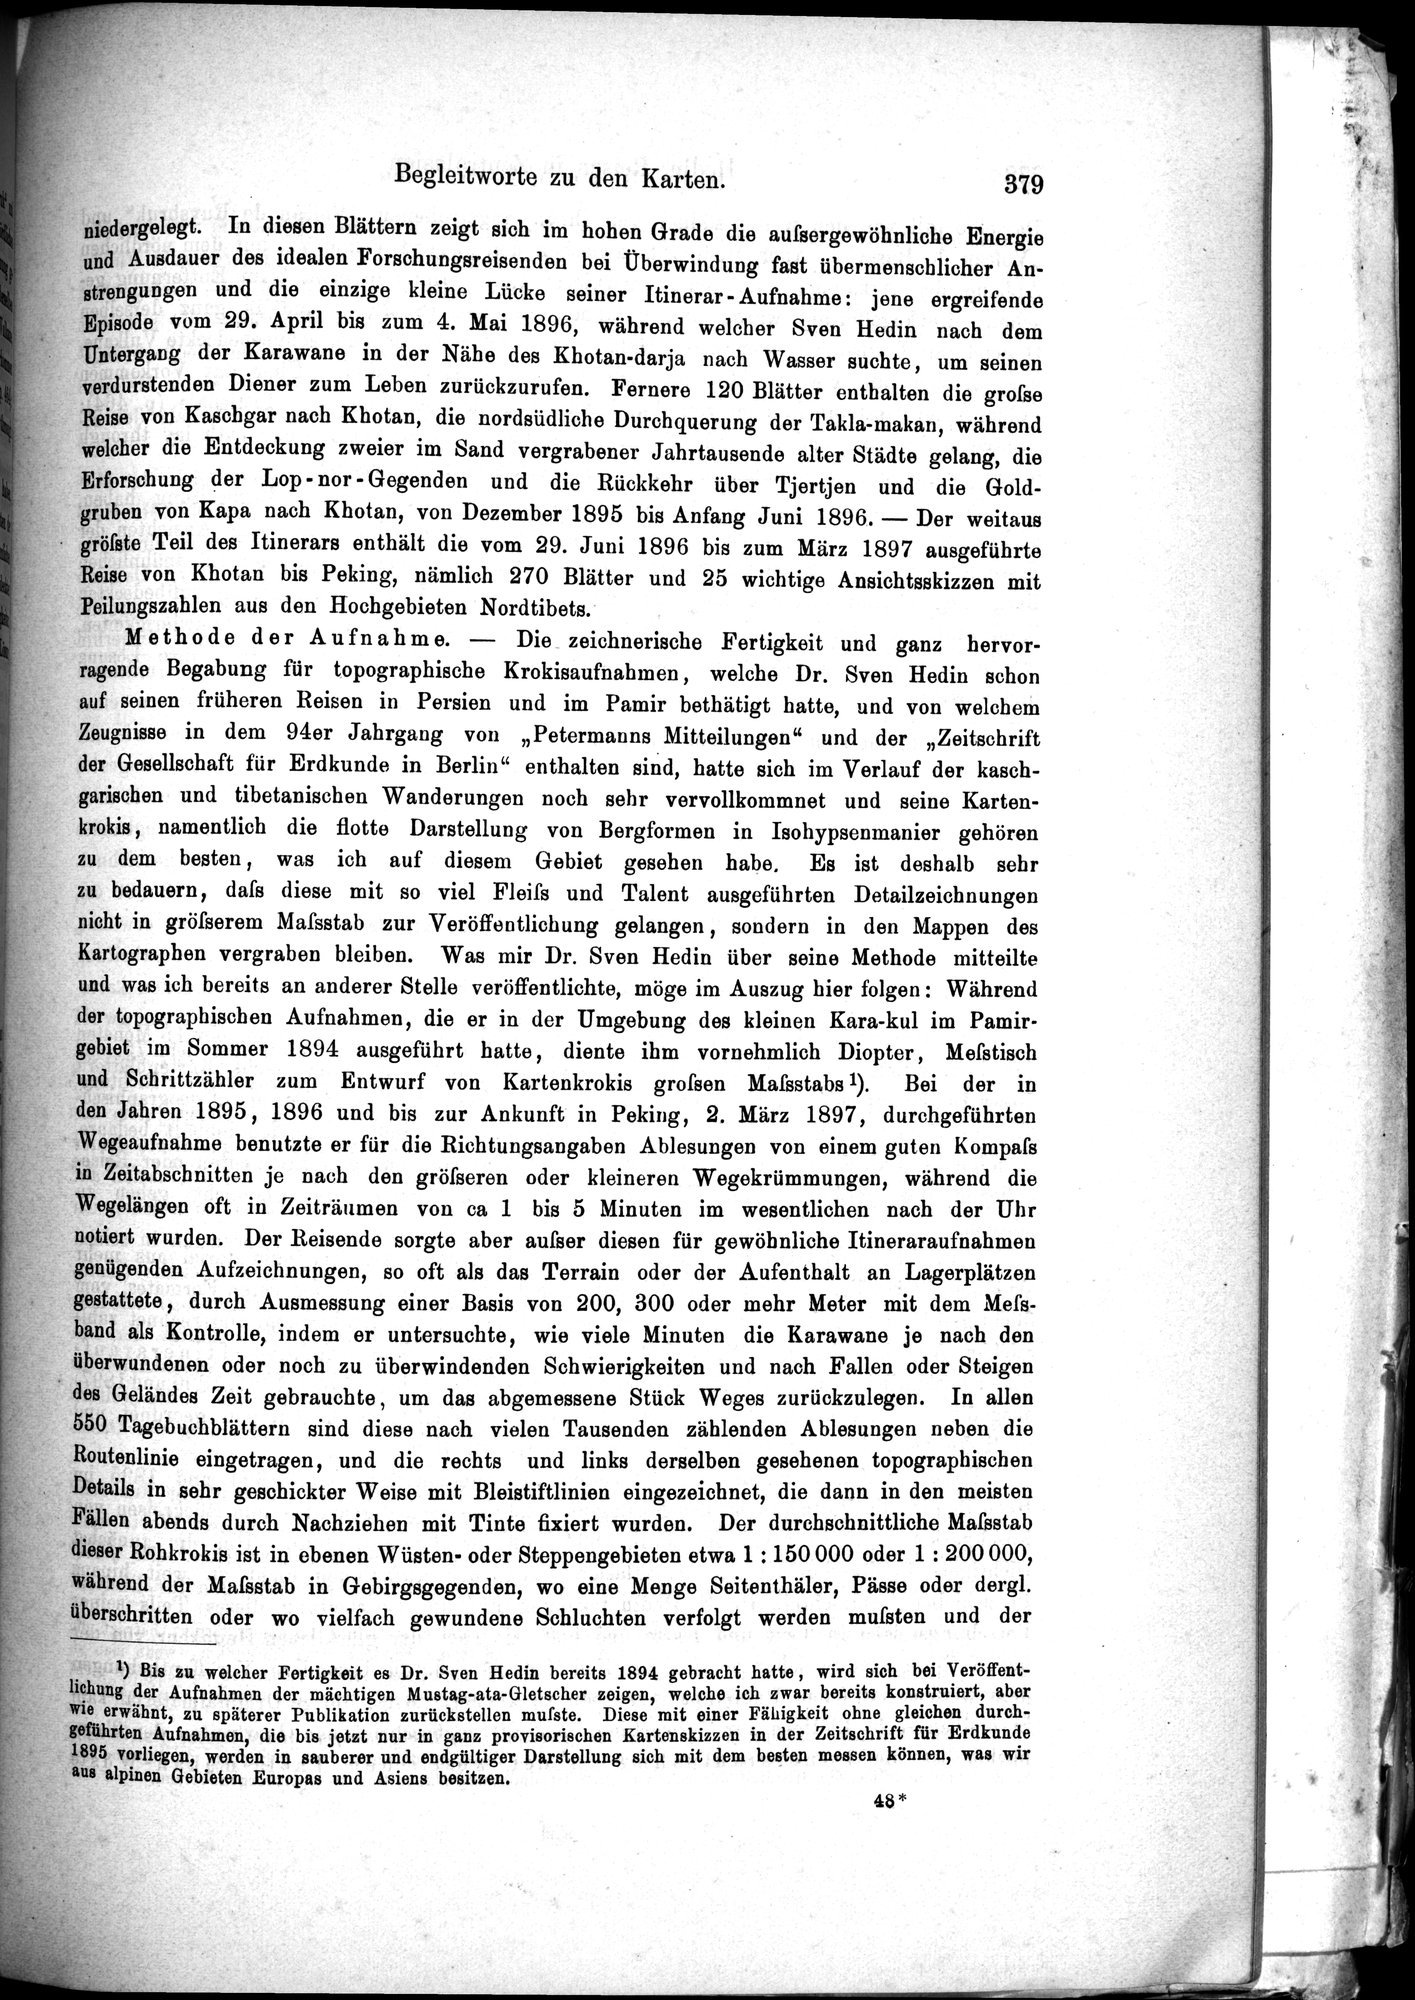 Die Geographische-Wissenschaftlichen Ergebnisse meiner Reisen in Zentralasien, 1894-1897 : vol.1 / Page 391 (Grayscale High Resolution Image)